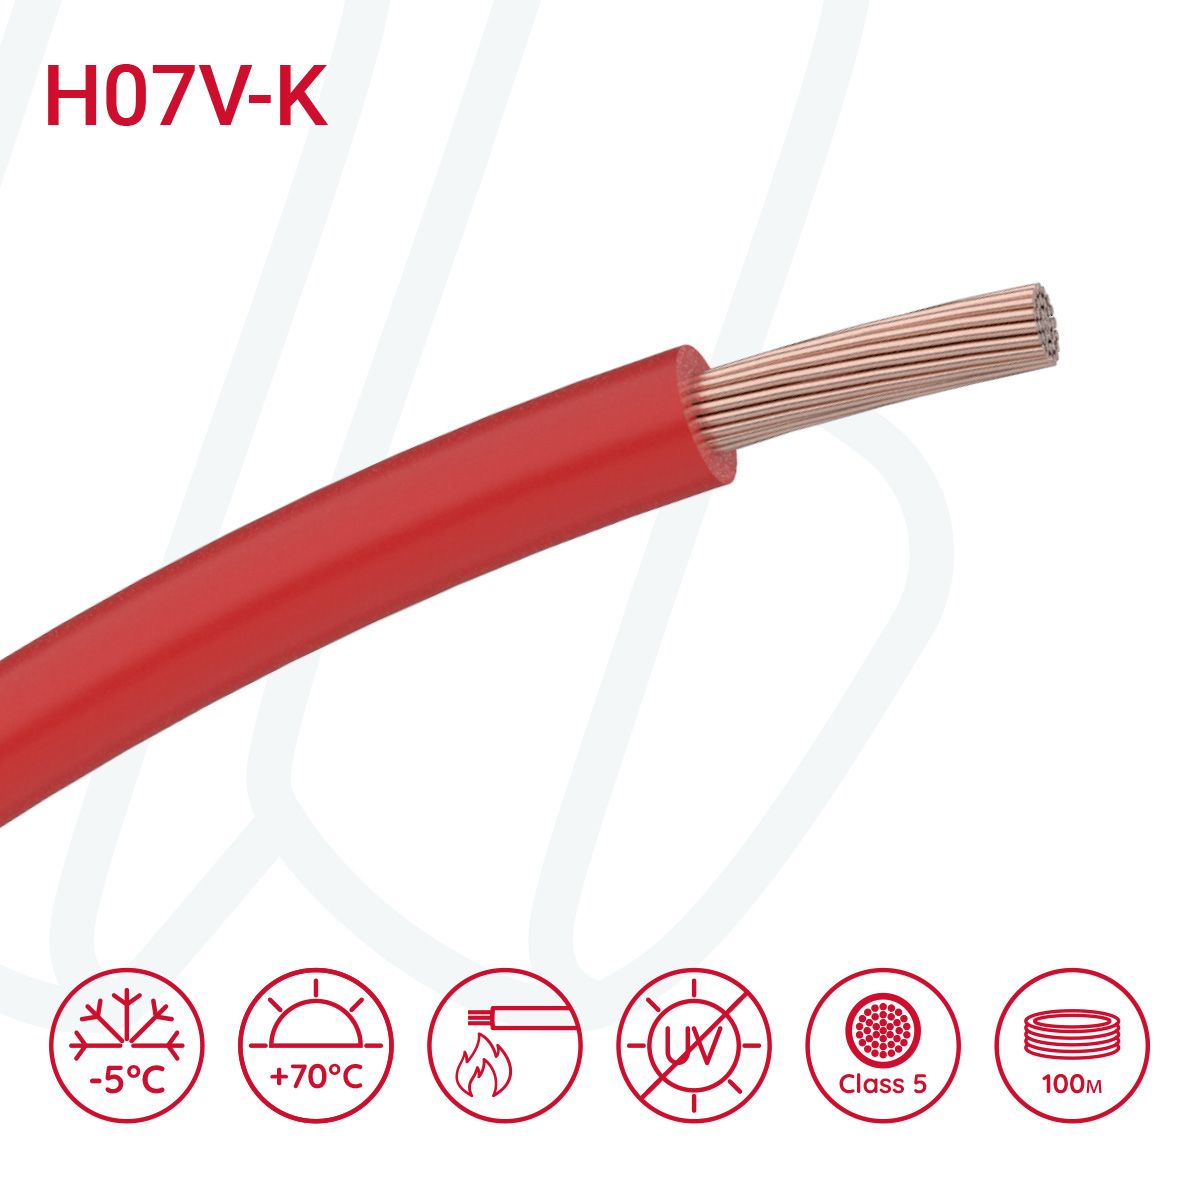 Провід монтажний гнучкий H07V-K 6 мм² червоний, 01, 6